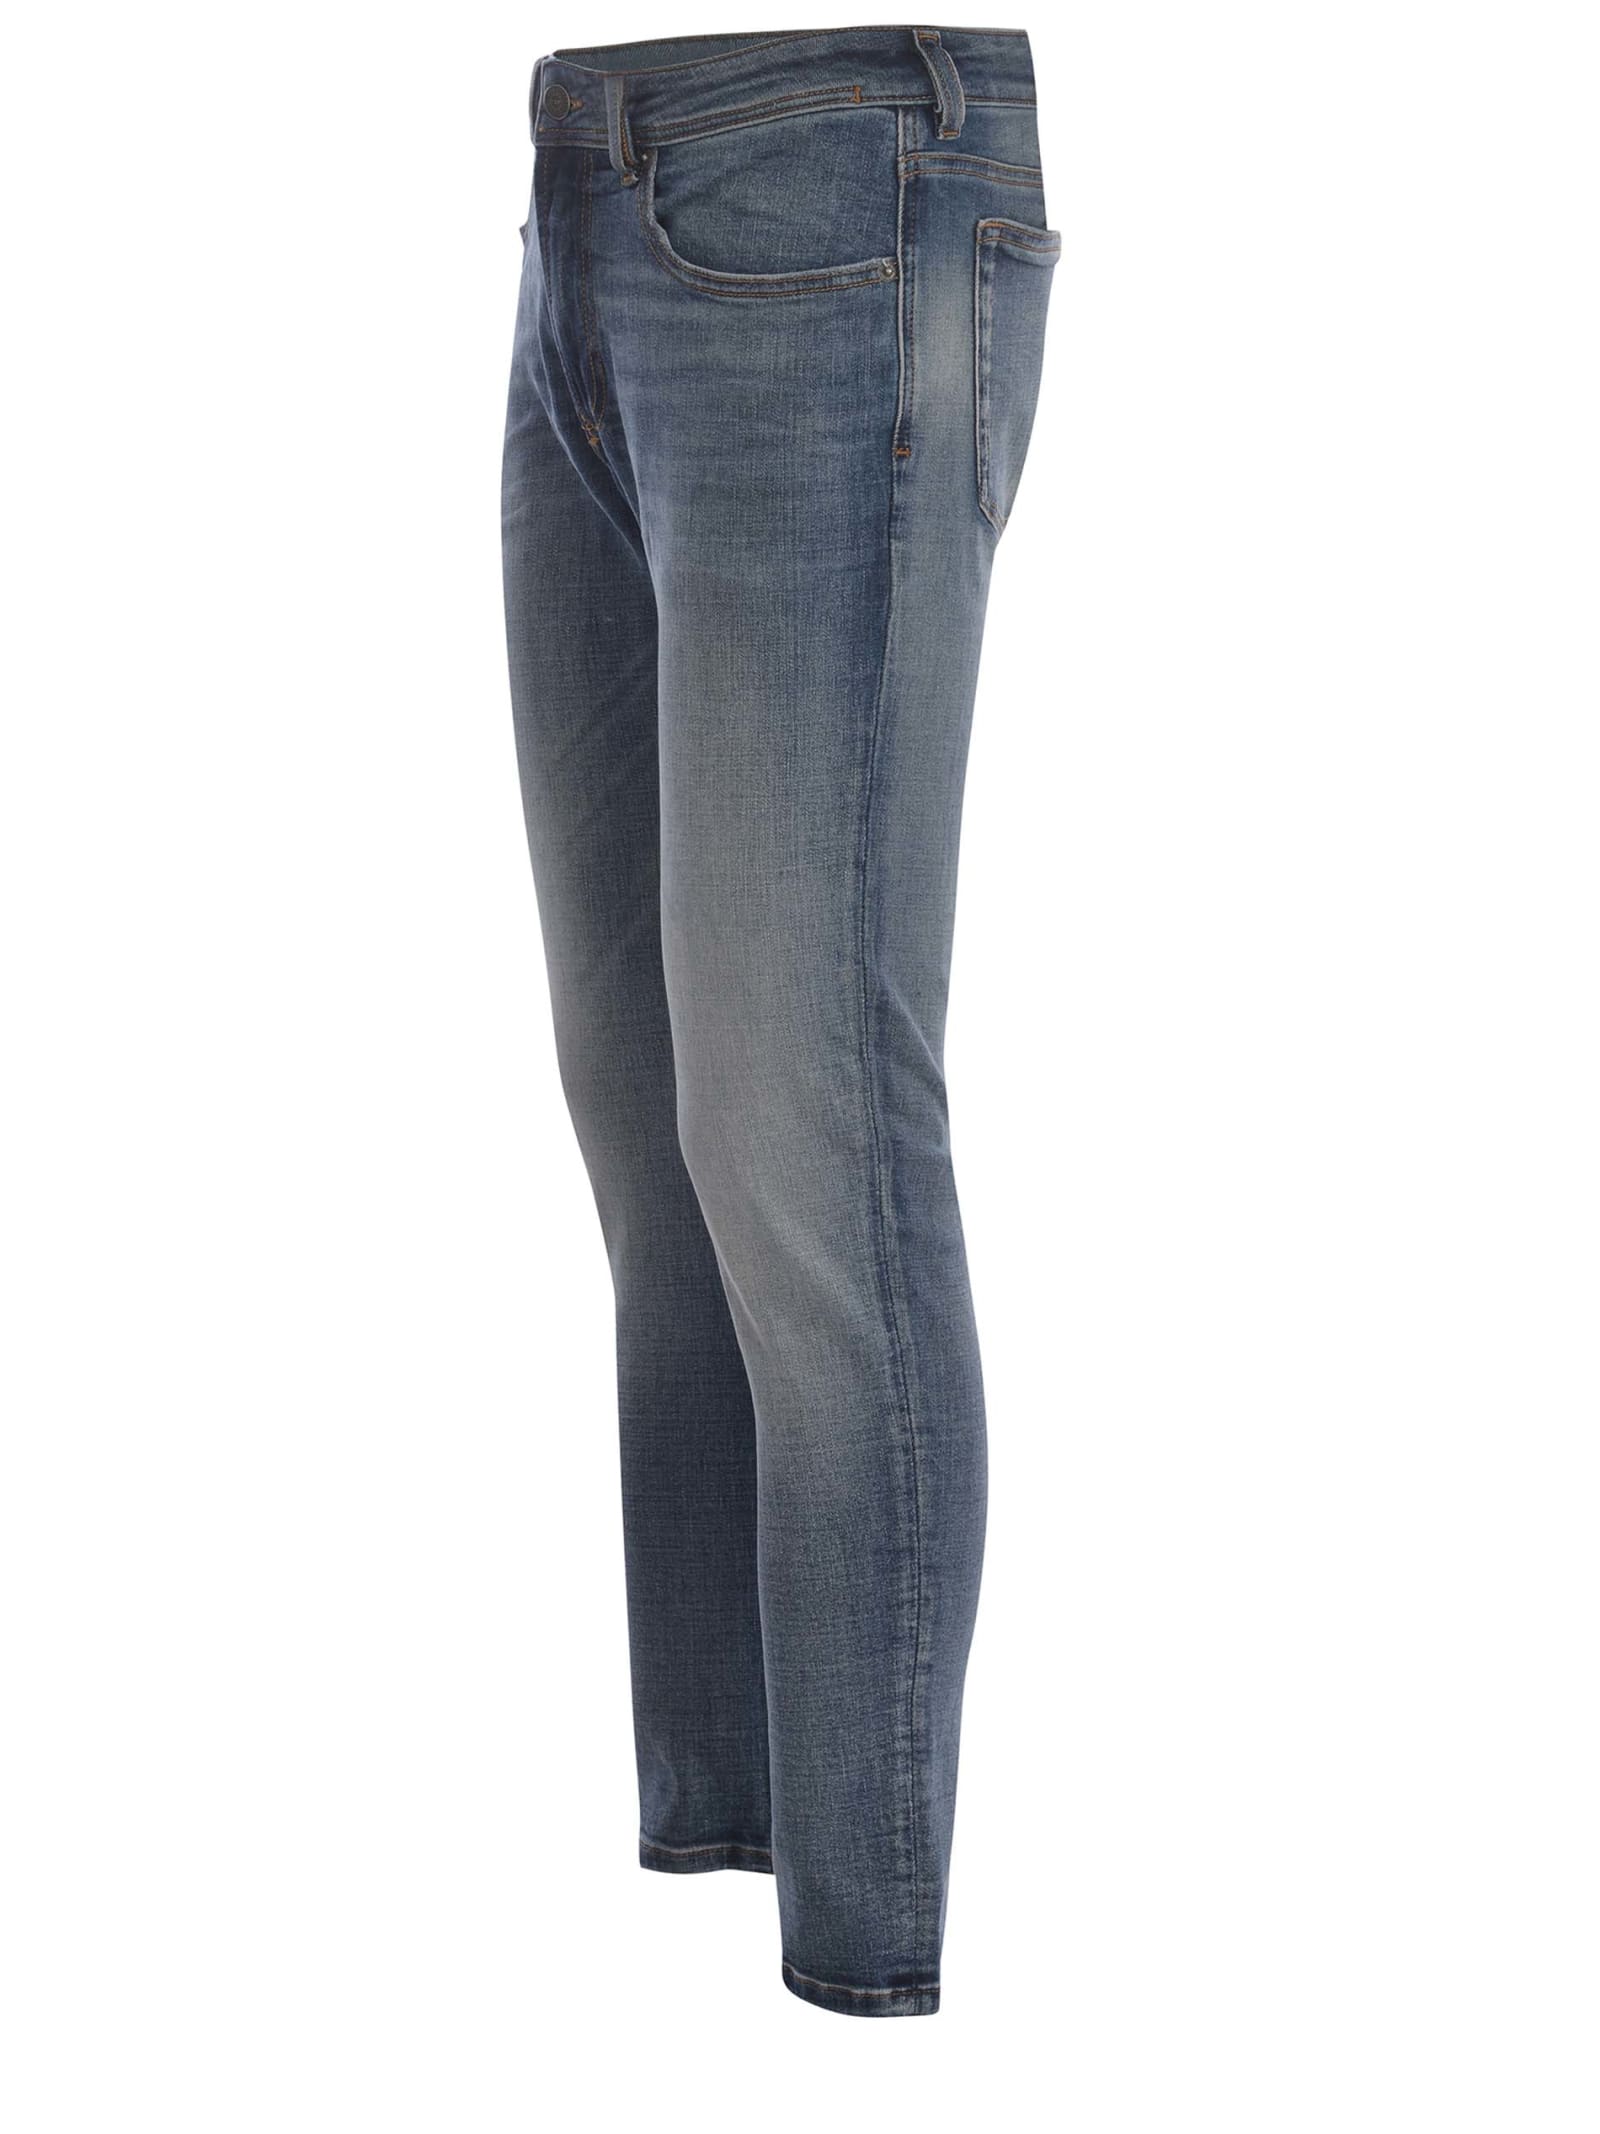 Shop Diesel Jeans  Sleenker Made Of Denim In Blu Chiaro